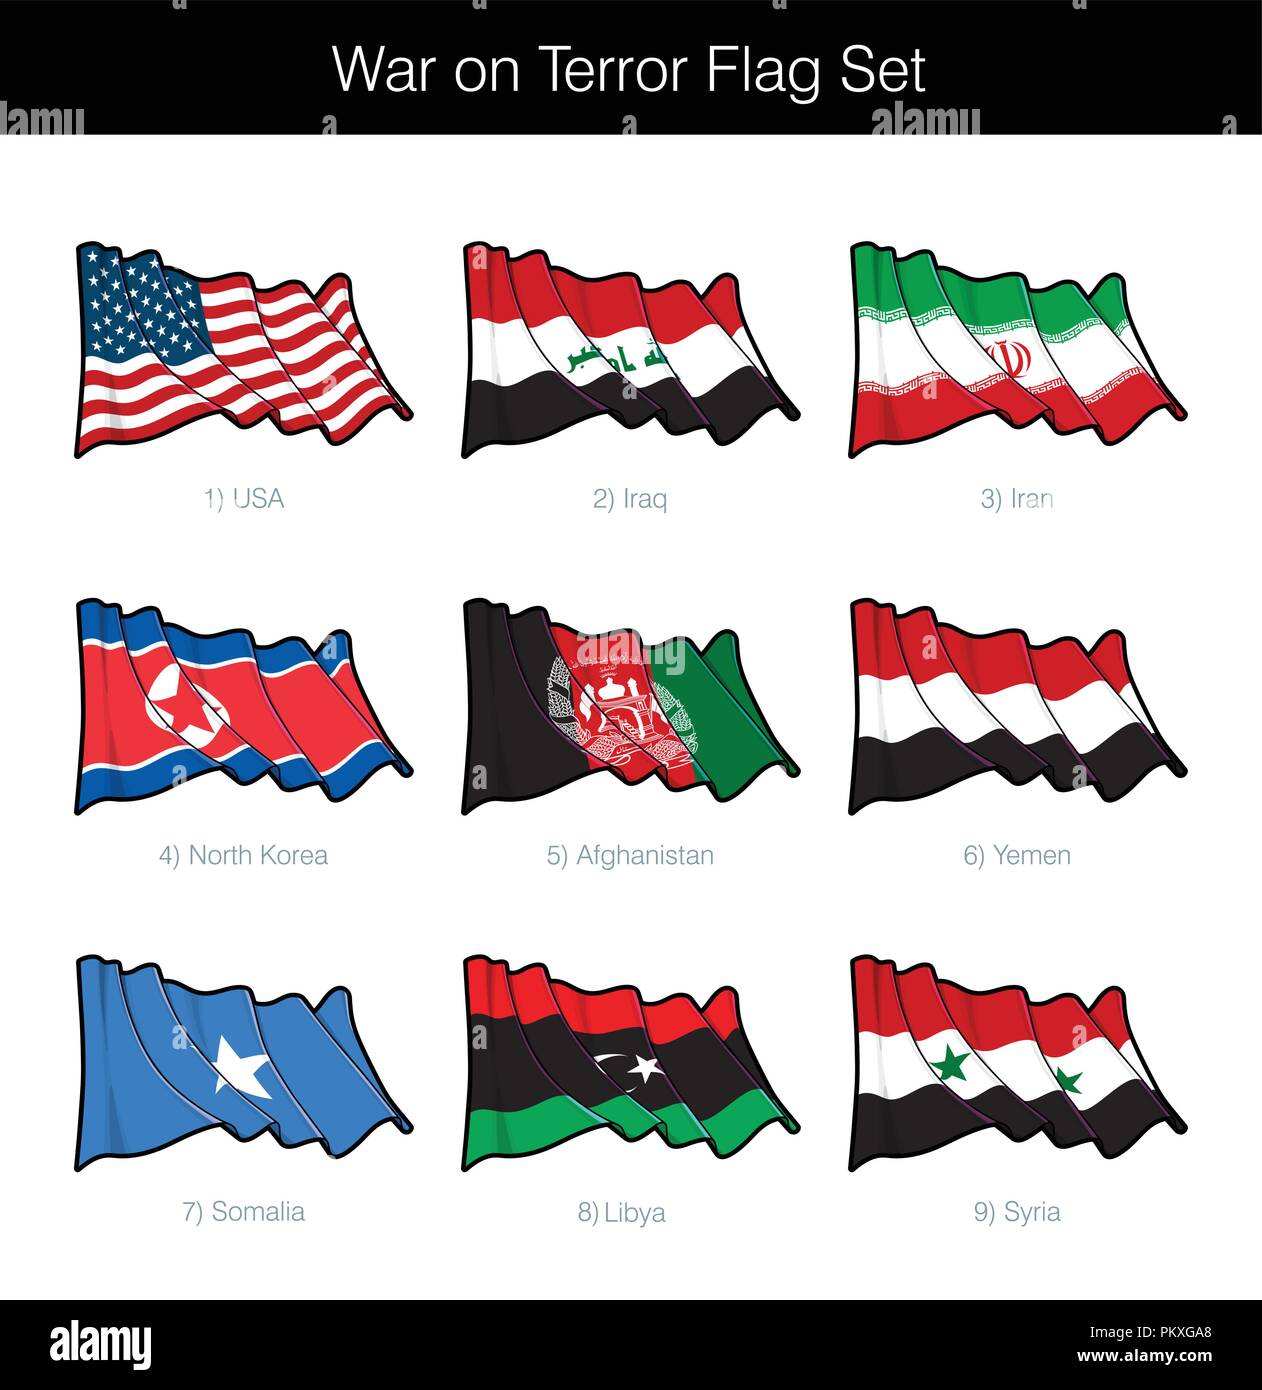 Krieg gegen den Terror wehende Flagge gesetzt. Das Set beinhaltet die Flaggen der USA, Irak, Iran, Nordkorea, Afghanistan, Jemen, Somalia, Libyen und Syrien. Vector Icons Stock Vektor